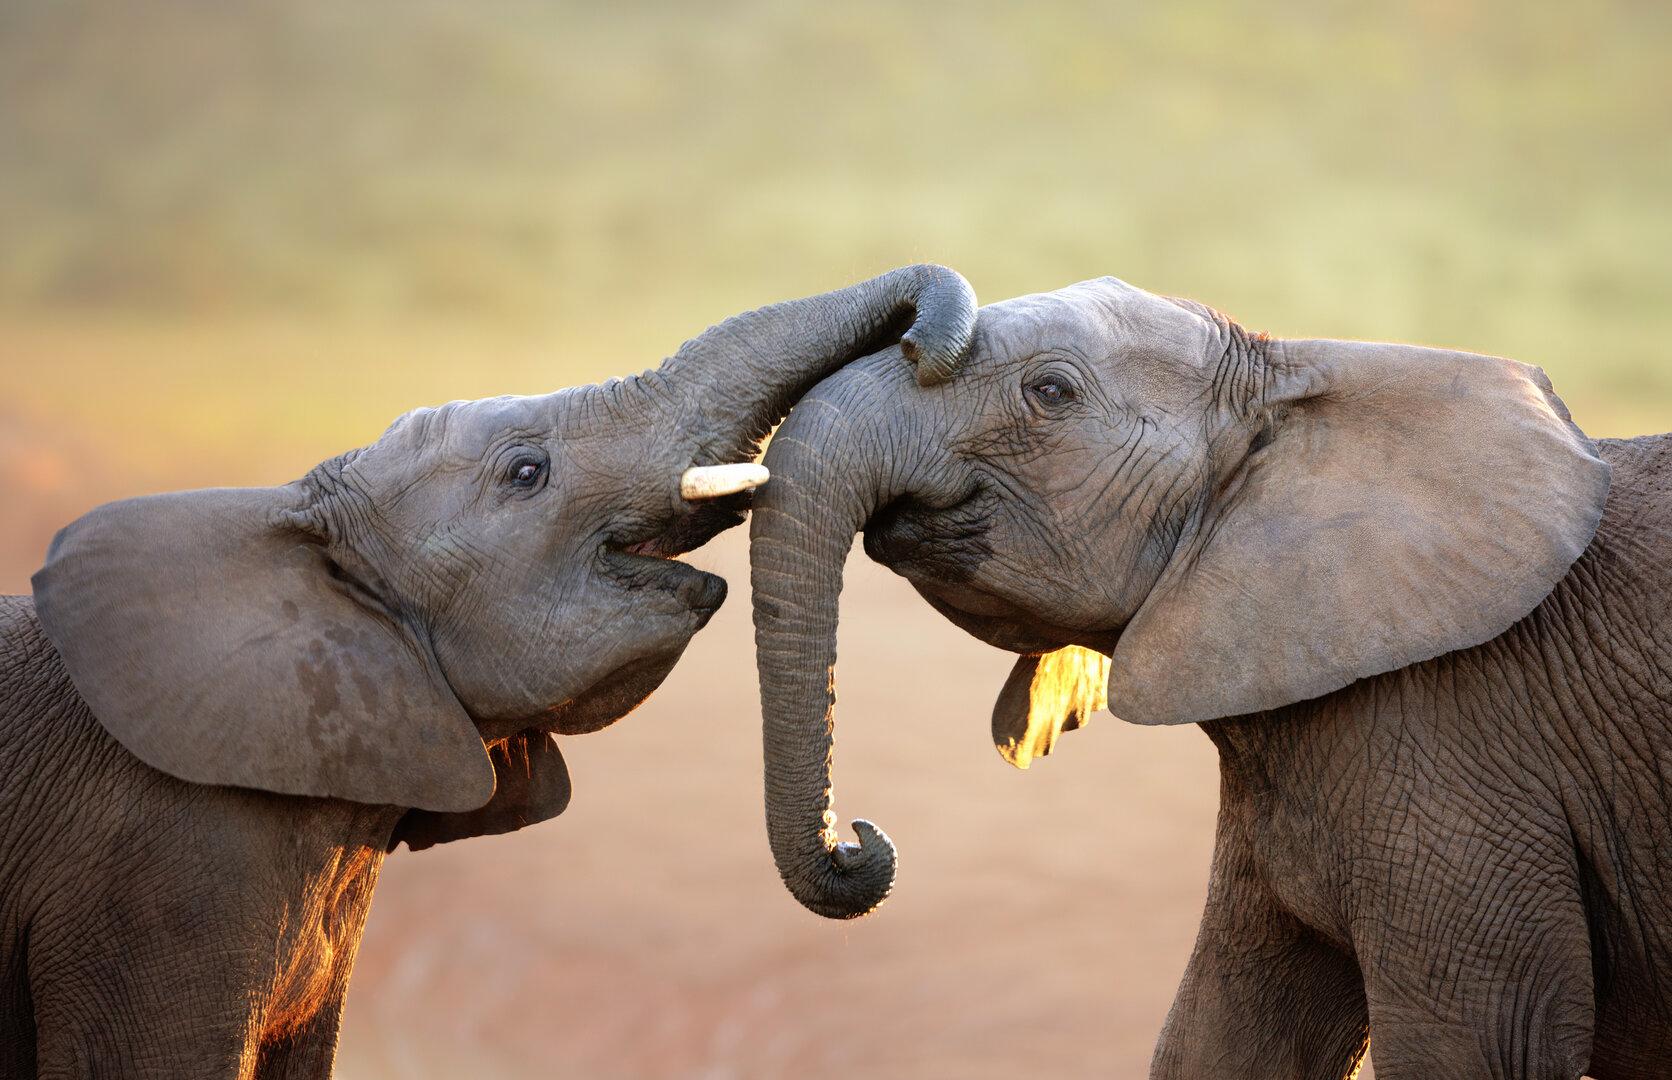 Elefantenbullen kommunizieren mehr, als bisher angenommen